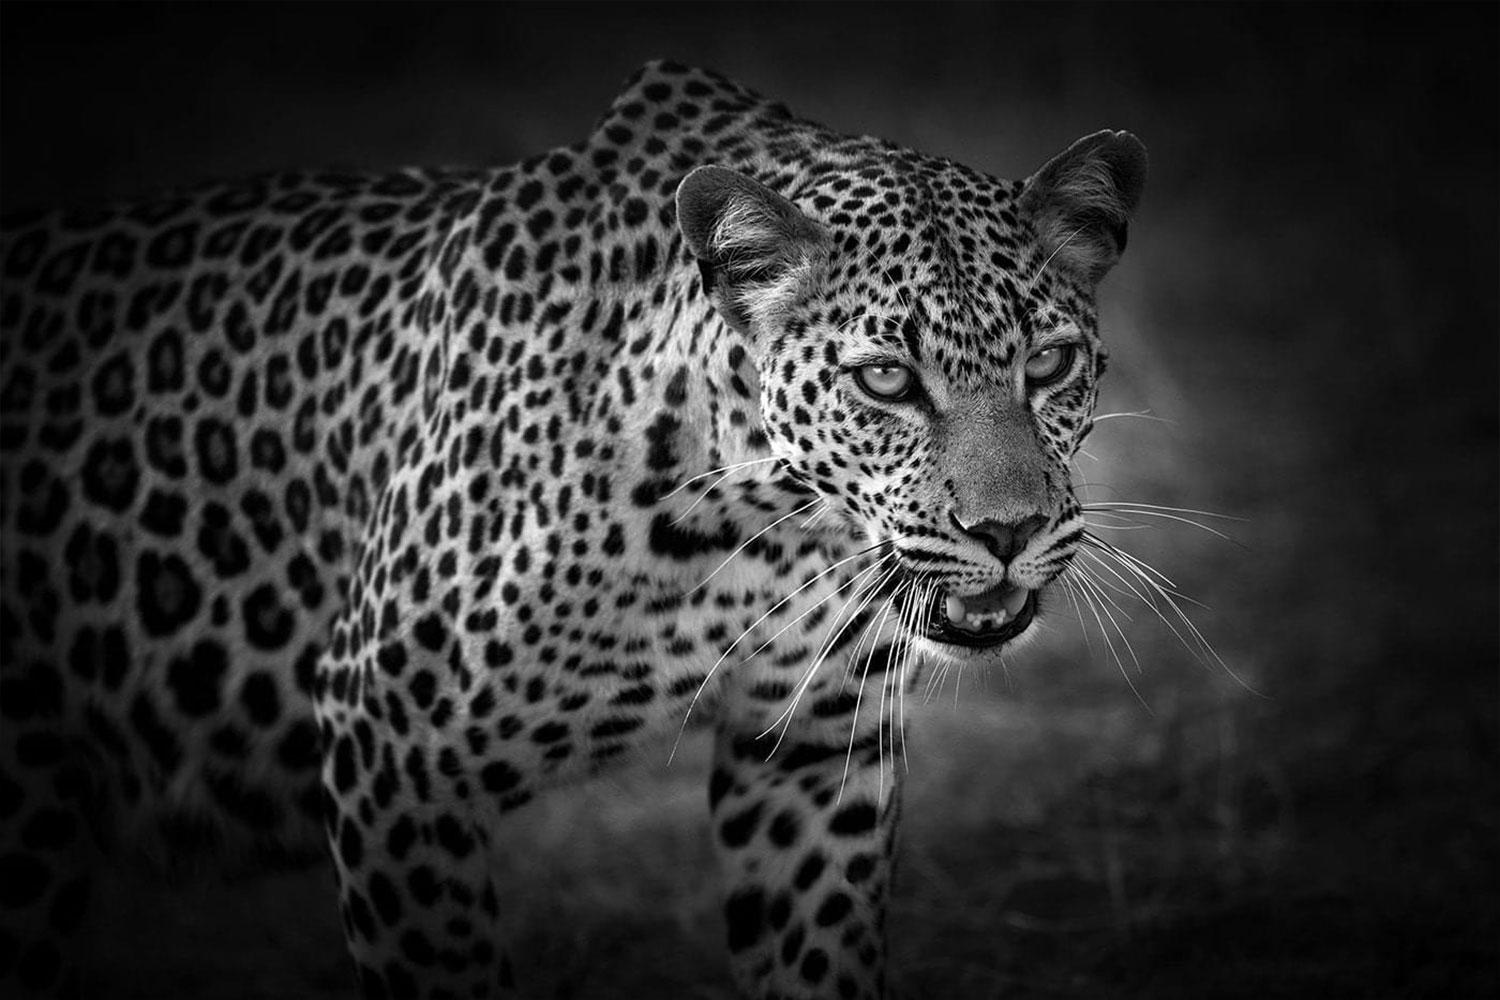 Black and White Photograph Björn Persson - Réserve naturelle de la Reine d'Afrique, Kenya